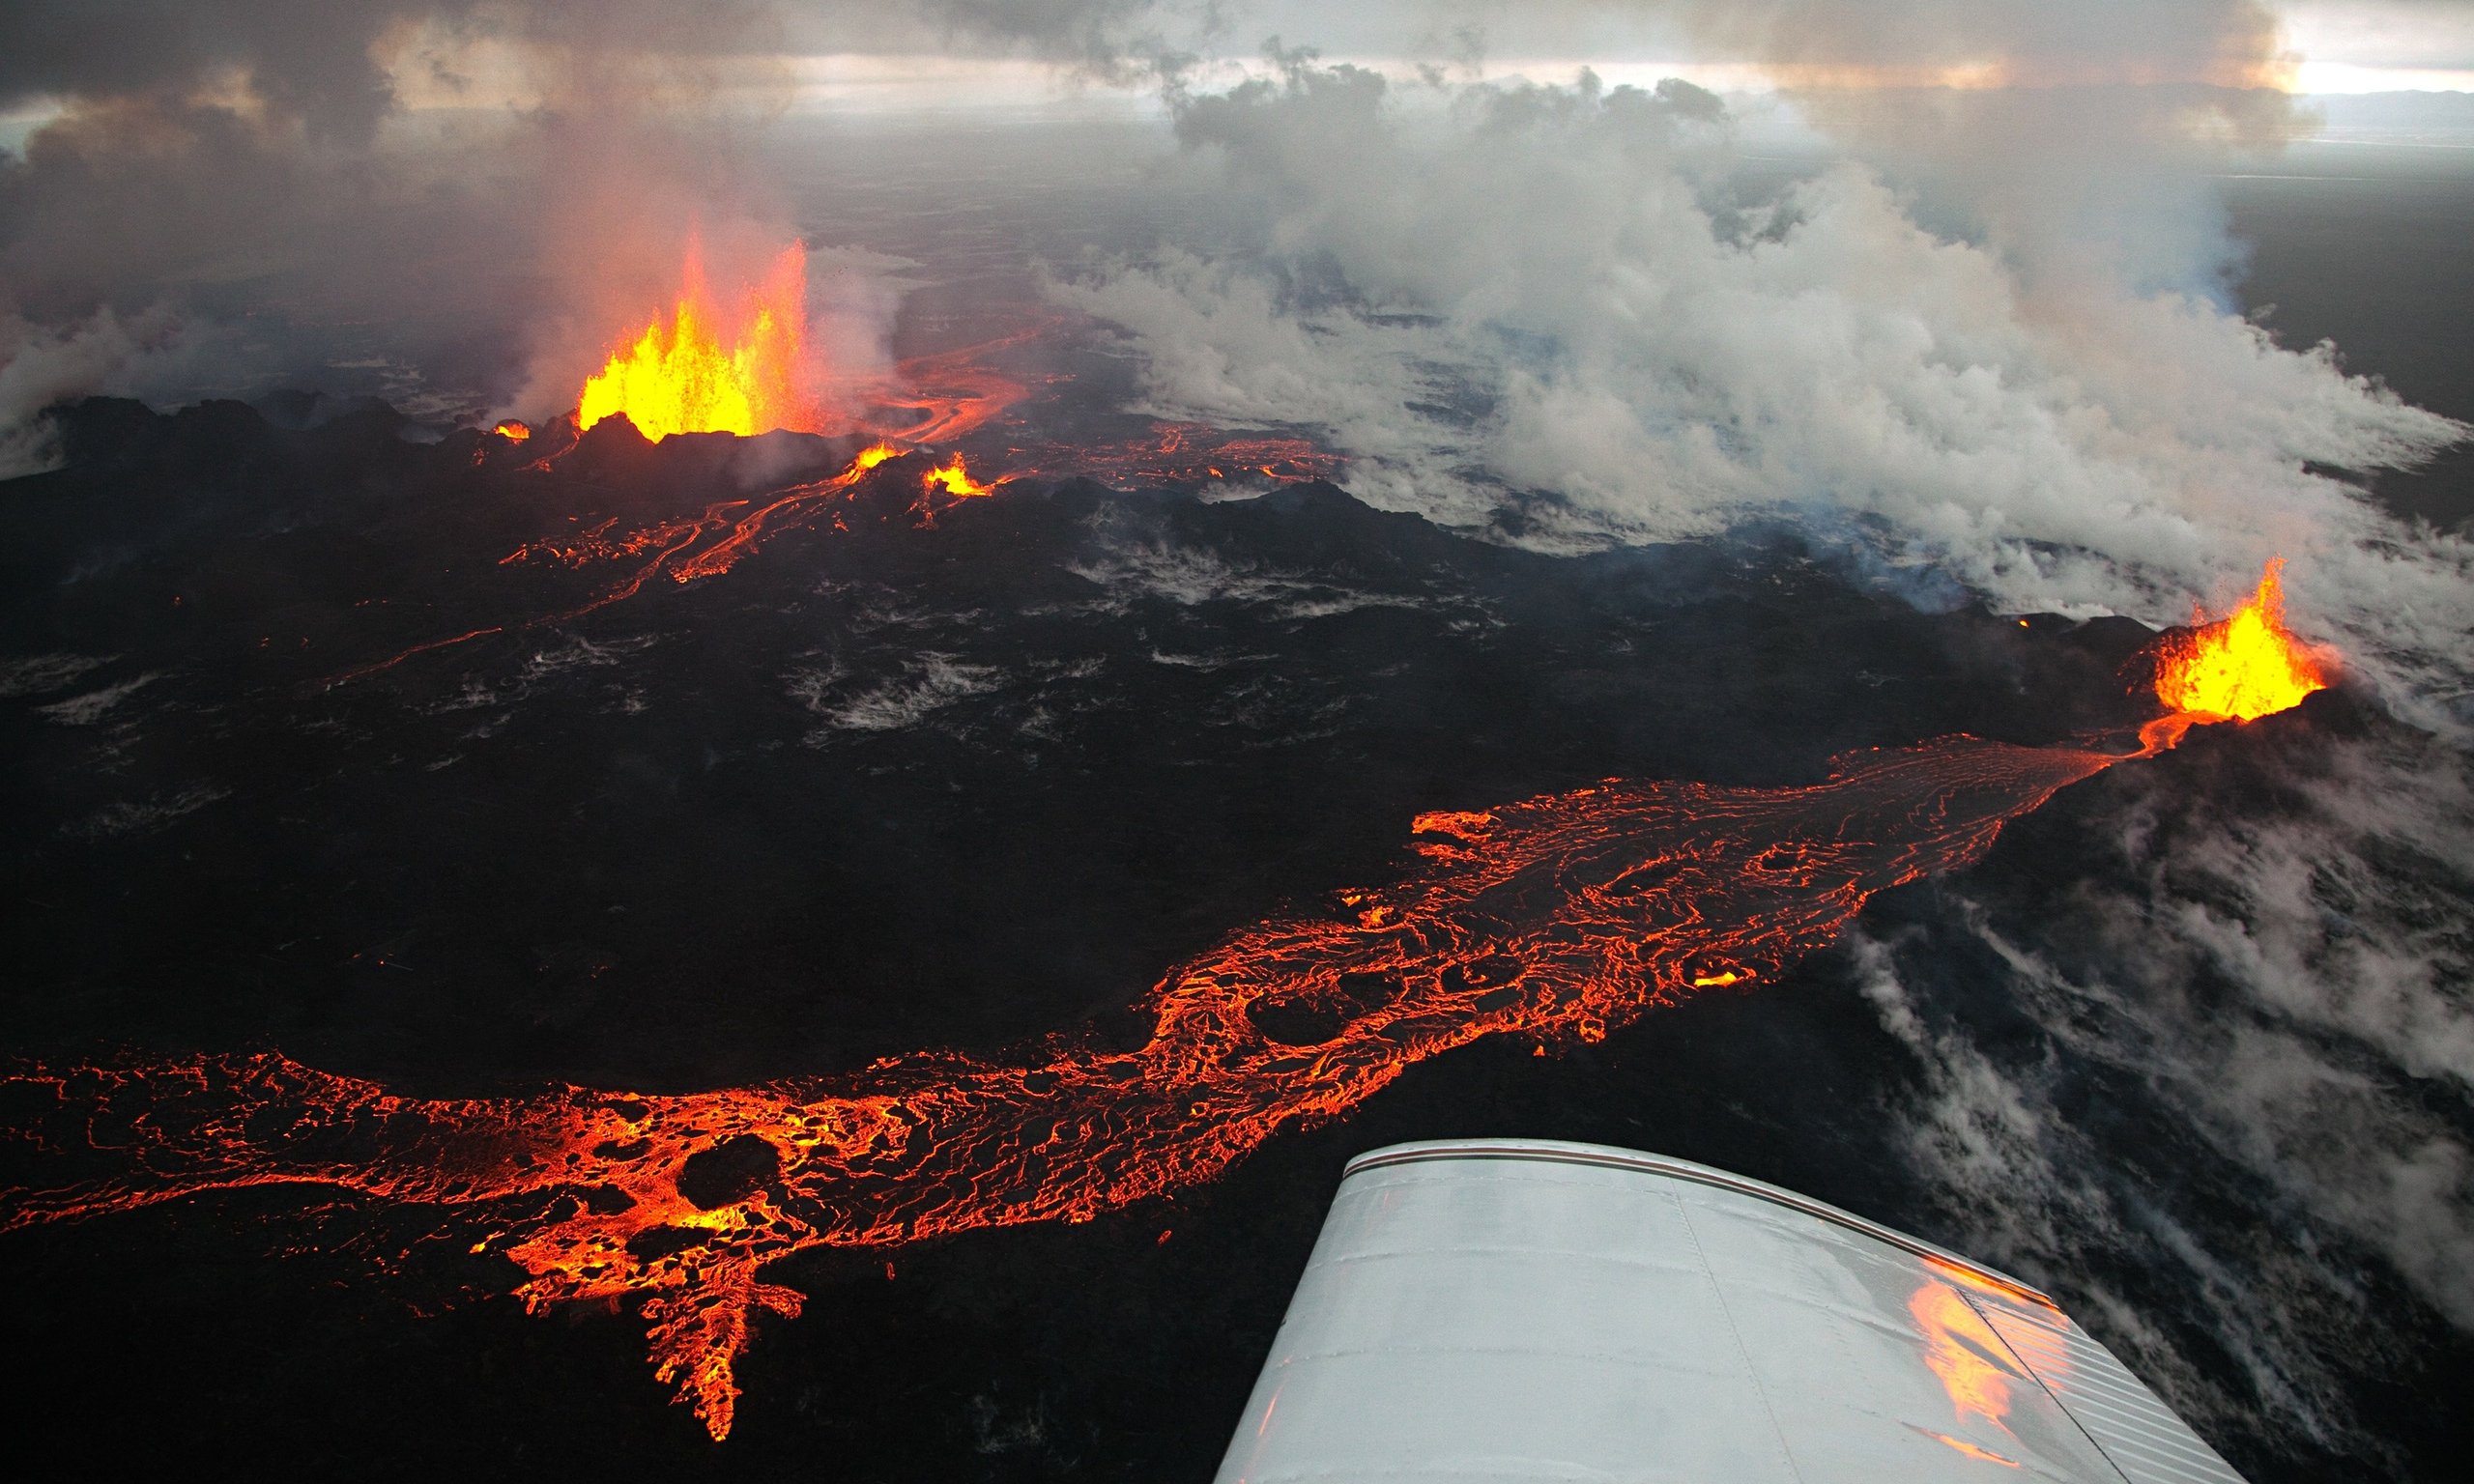 Сильные землетрясения вулканы гейзеры наблюдаются. Вулкан Бардарбунга. Извержение вулкана эйяфьядлайёкюдль в Исландии. Извержение вулкана Холухрейн, Исландия. Бардарбунга 2014 год Исландия.